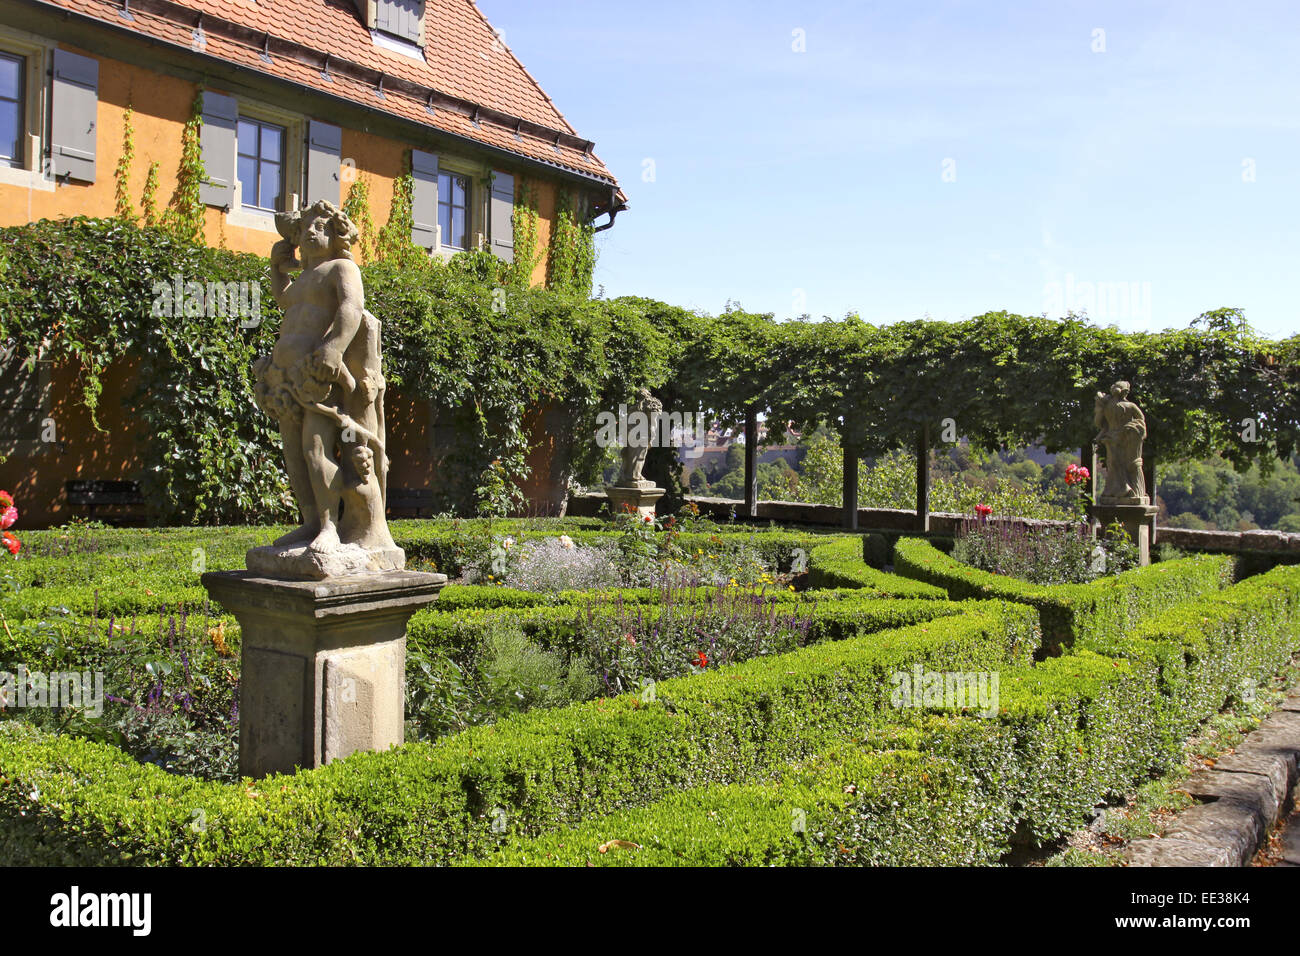 Deutschland, Bayern, Rothenburg ob der Tauber, Burggarten, Garten, Skulptur, Steinskulptur Stock Photo